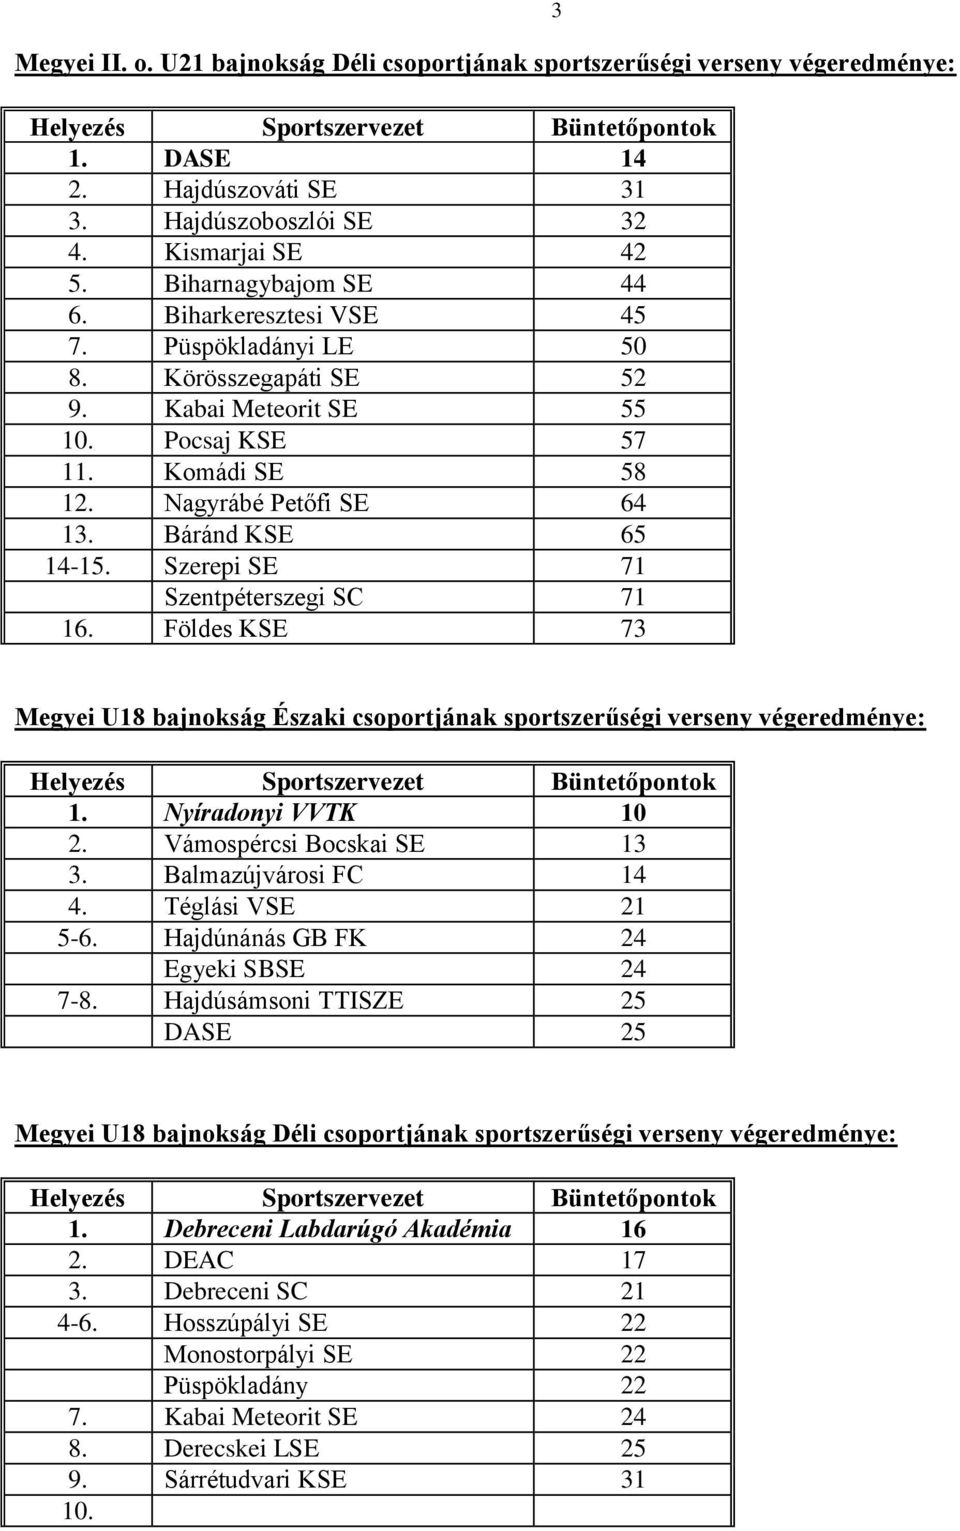 Szerepi SE 71 Szentpéterszegi SC 71 16. Földes KSE 73 3 Megyei U18 bajnokság Északi csoportjának sportszerűségi verseny végeredménye: 1. Nyíradonyi VVTK 10 2. Vámospércsi Bocskai SE 13 3.